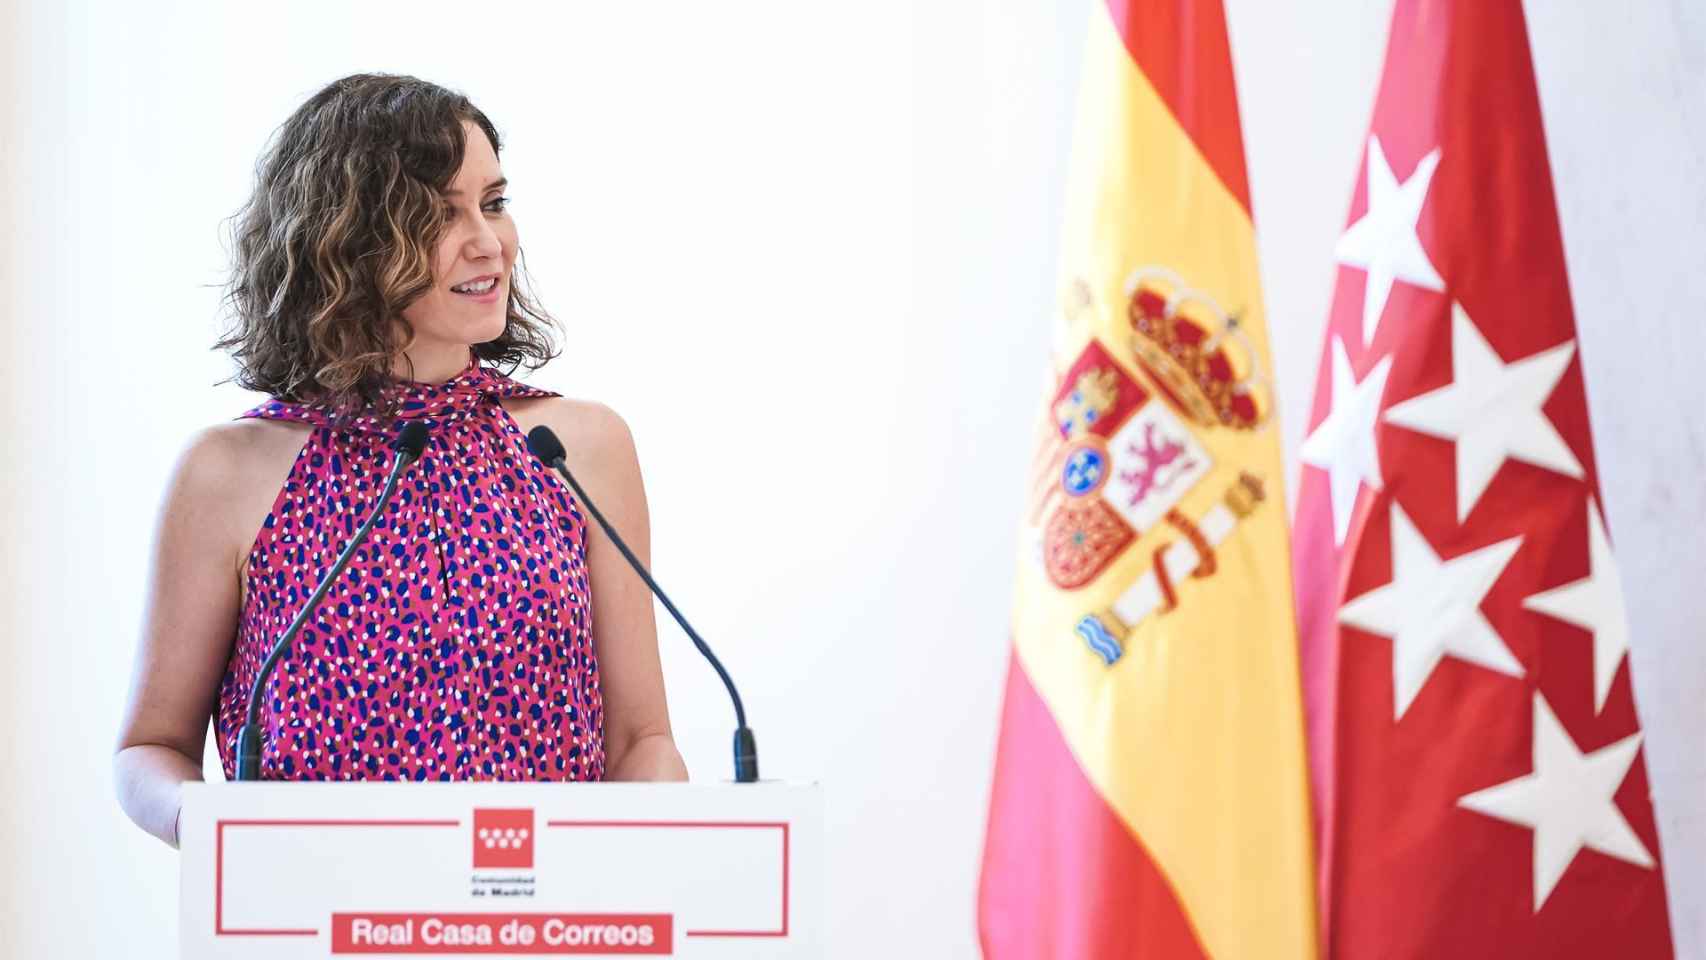 La presidenta de la Comunidad de Madrid, Isabel Díaz Ayuso, interviene tras recibir el galardón del Club de los Viernes.